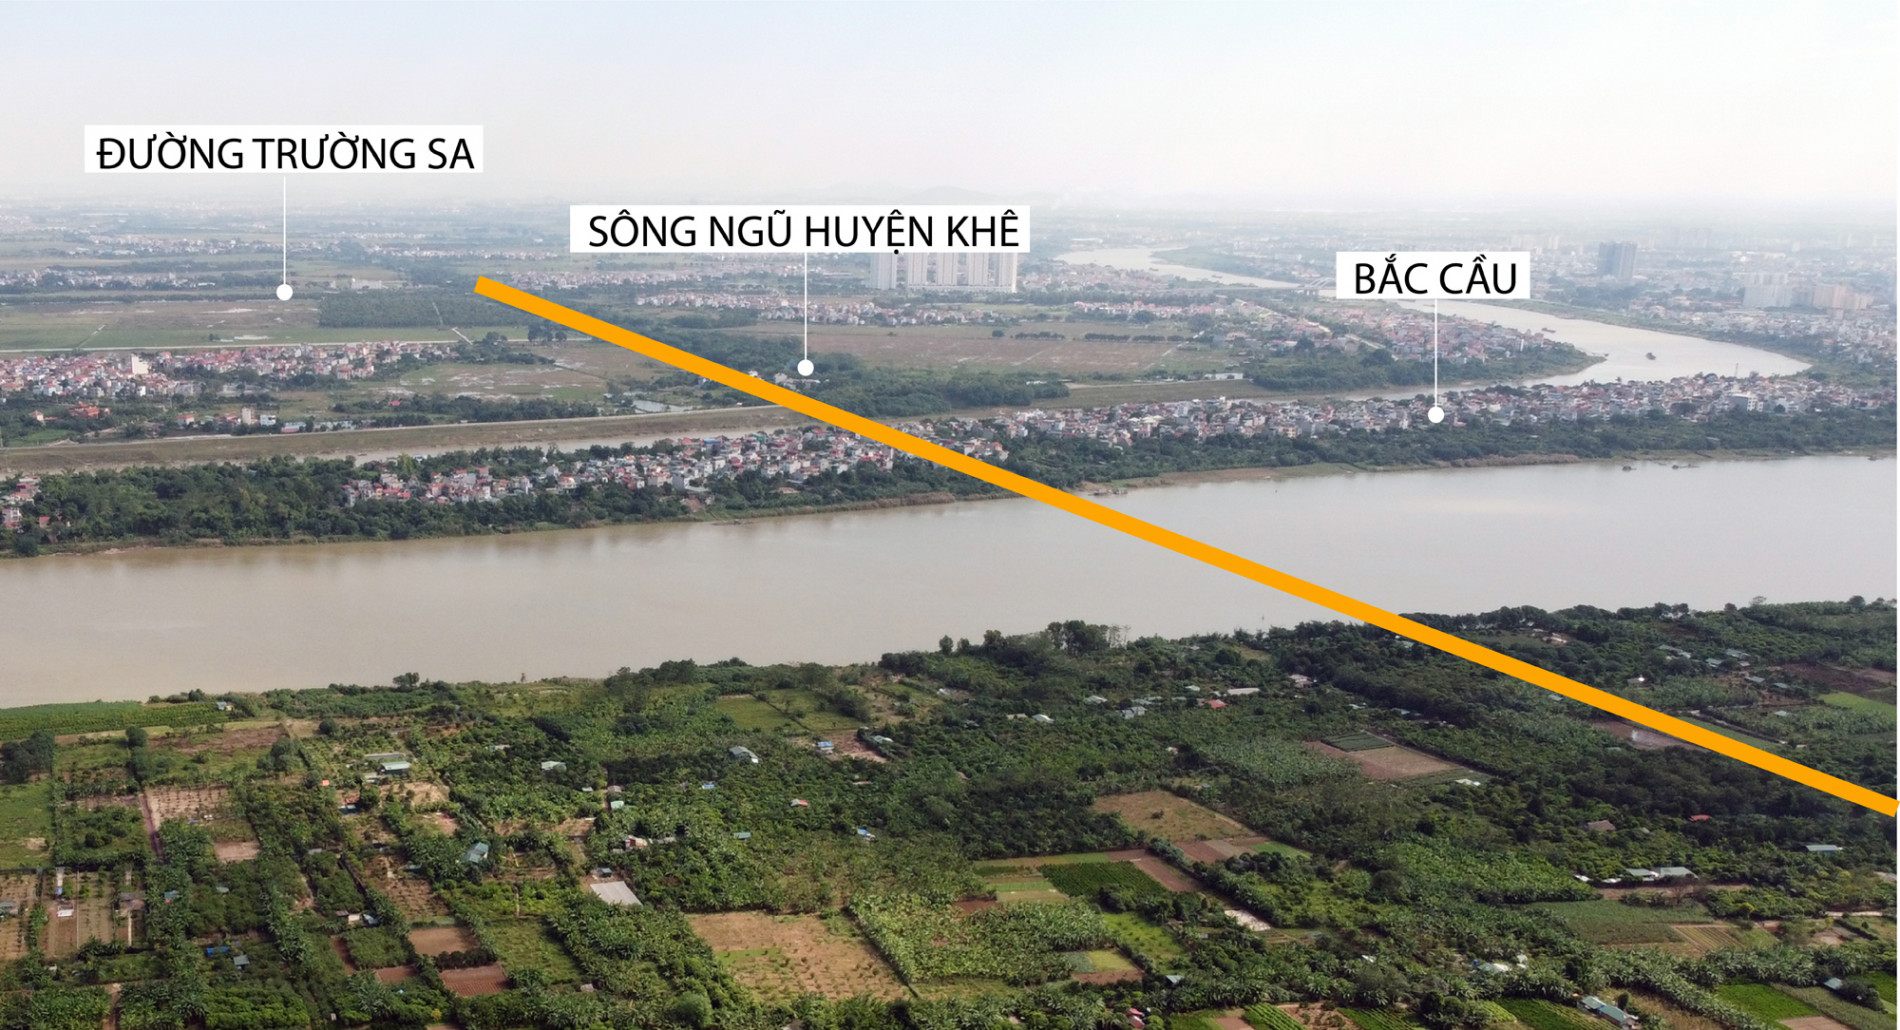 Hà Nội dự kiến làm cầu Trần Hưng Đạo, cầu Tứ Liên, vành đai 4 theo hình thức PPP trong giai đoạn 2021-2025 - Ảnh 1.